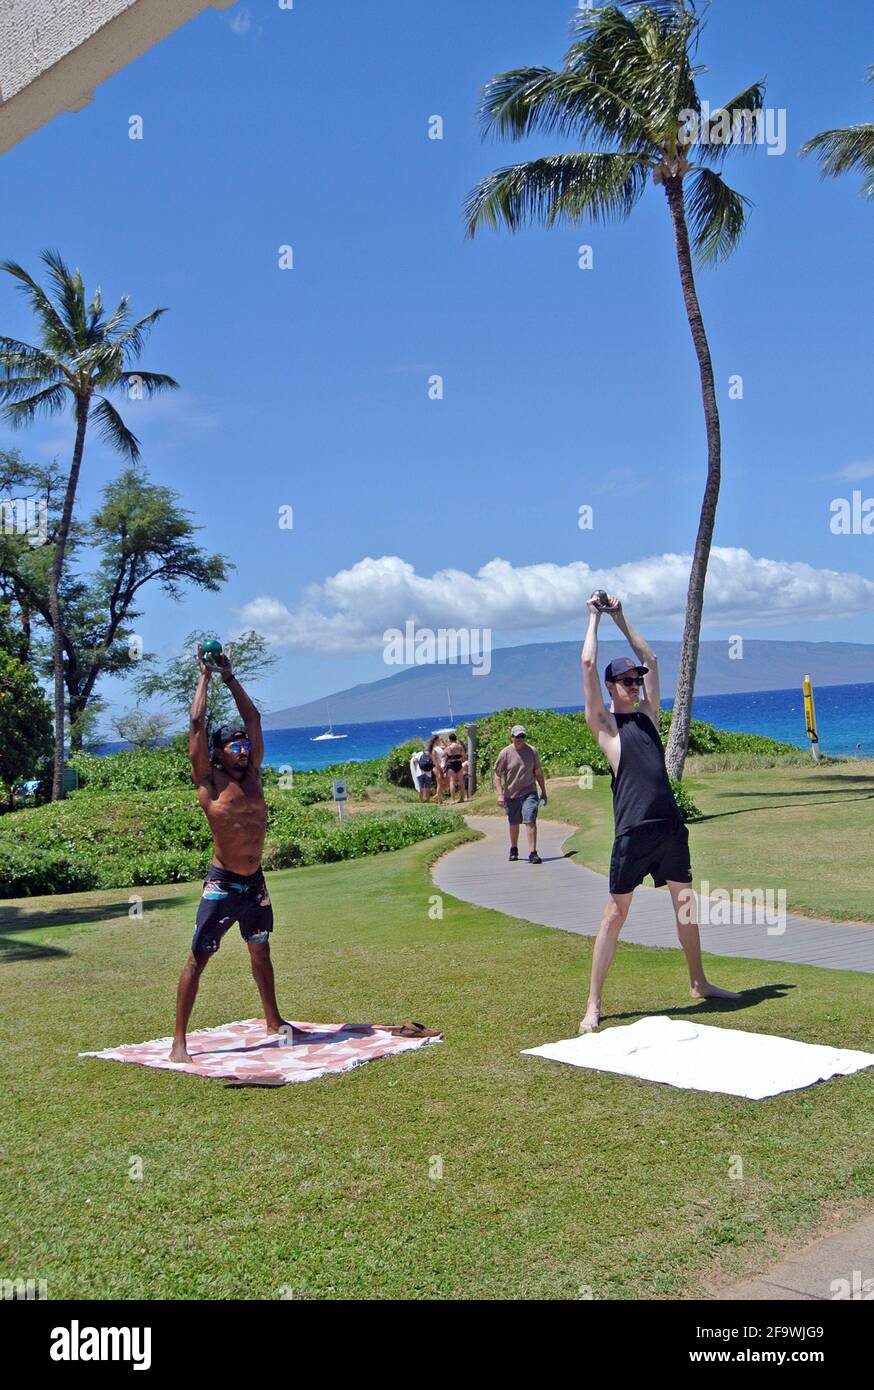 Los turistas de hawaii disfrutan de las vistas del océano pacífico desde la playa Kaanapali En la pequeña ciudad histórica de Lahaina Maui usa Foto de stock